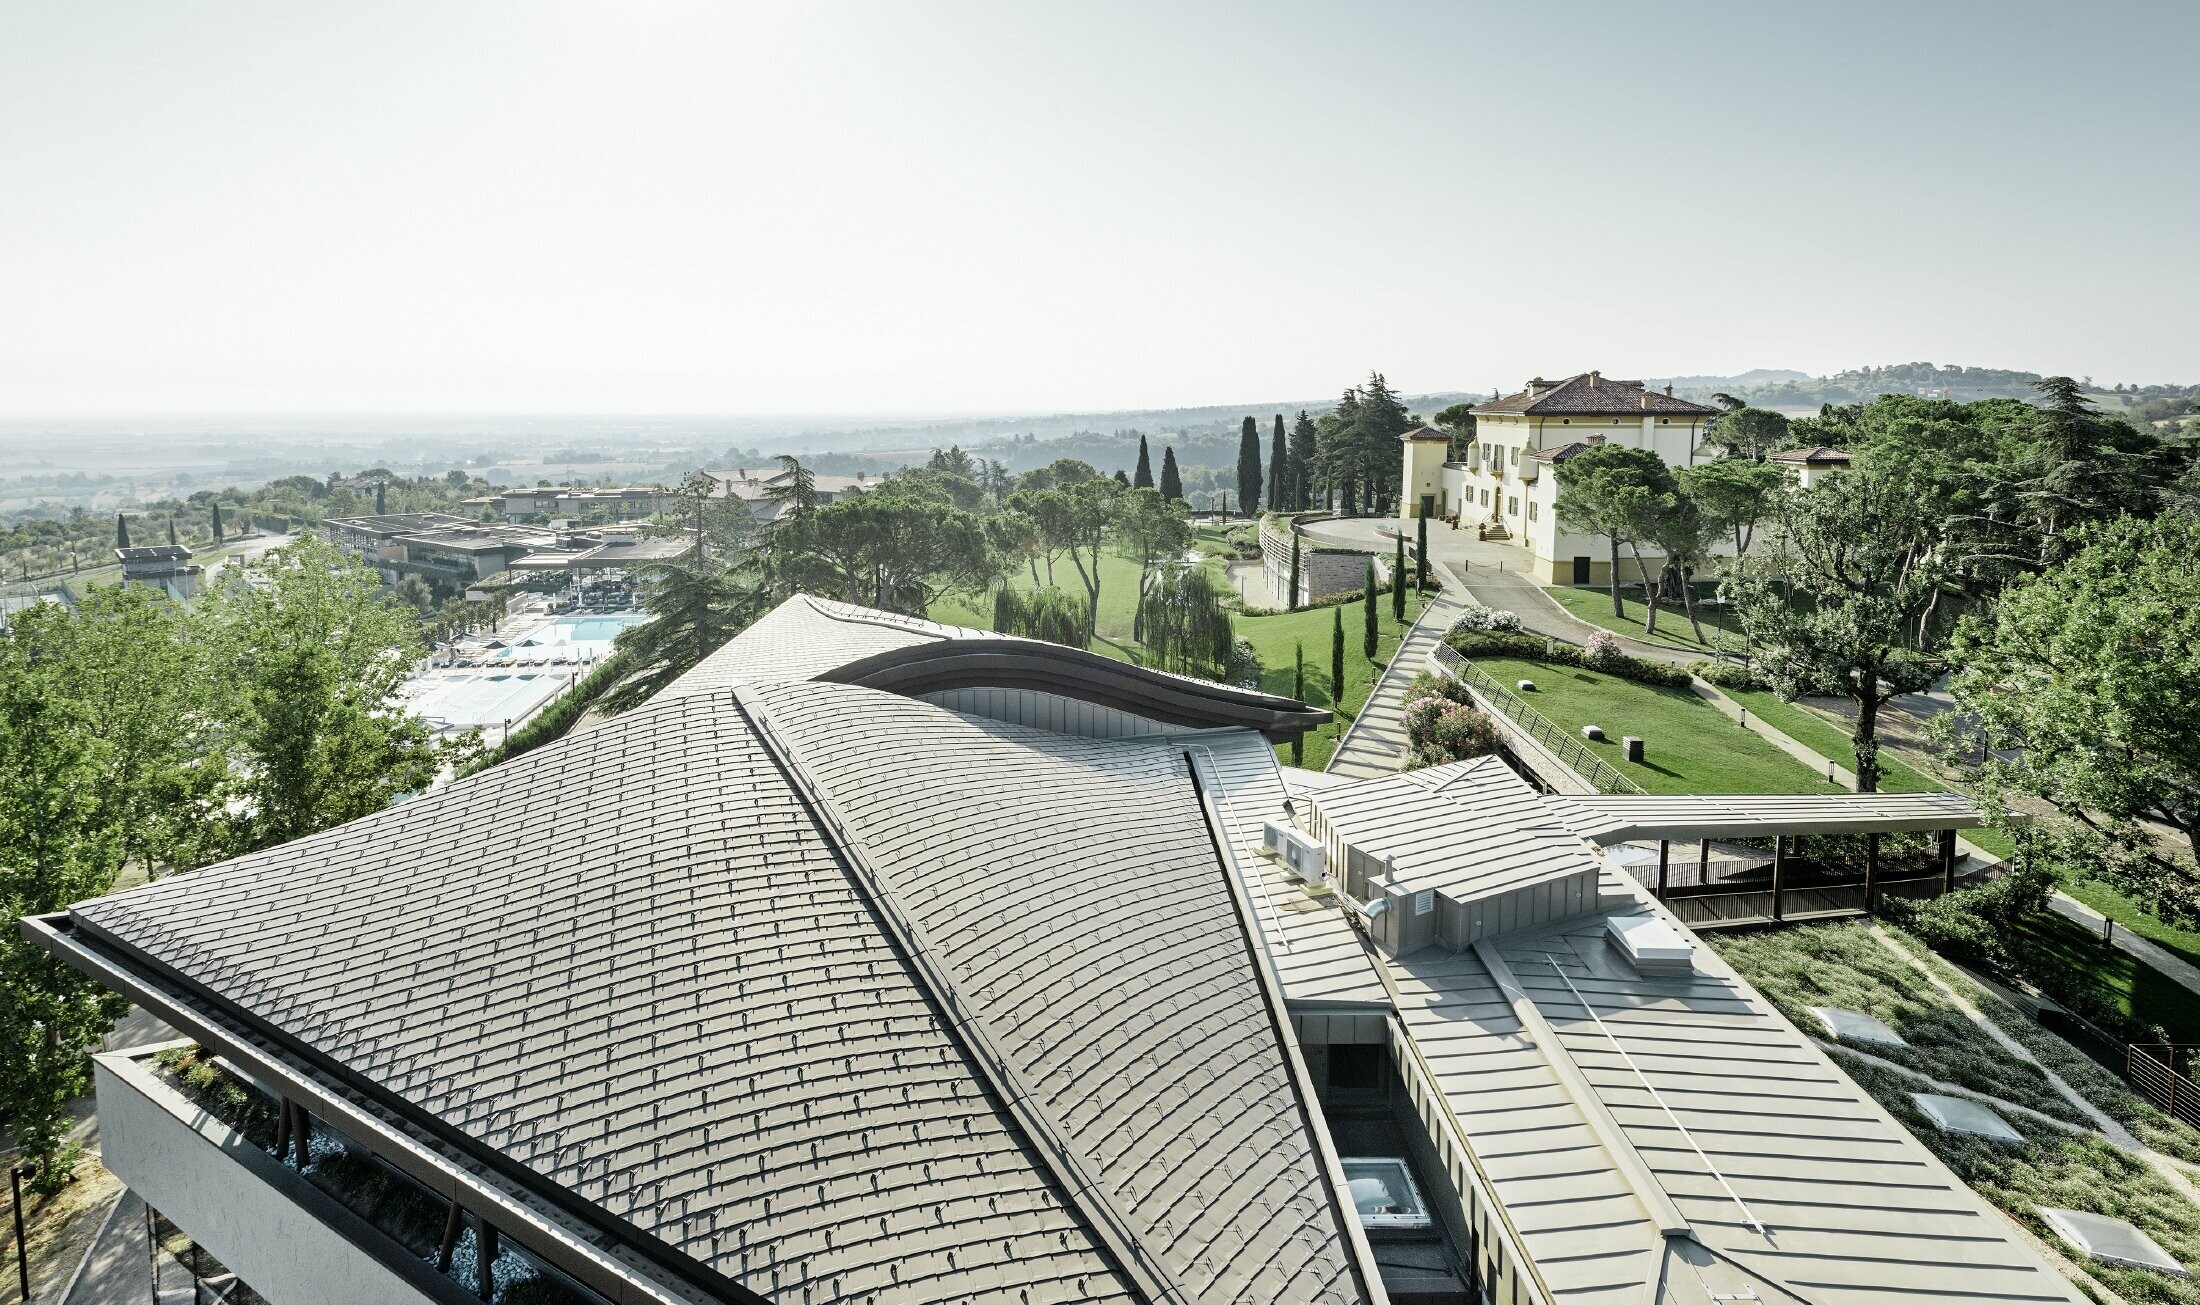 Palazzo w ośrodku golfowym Varignana z rozległym dachem aluminiowym PREFA w kolorze brązowym